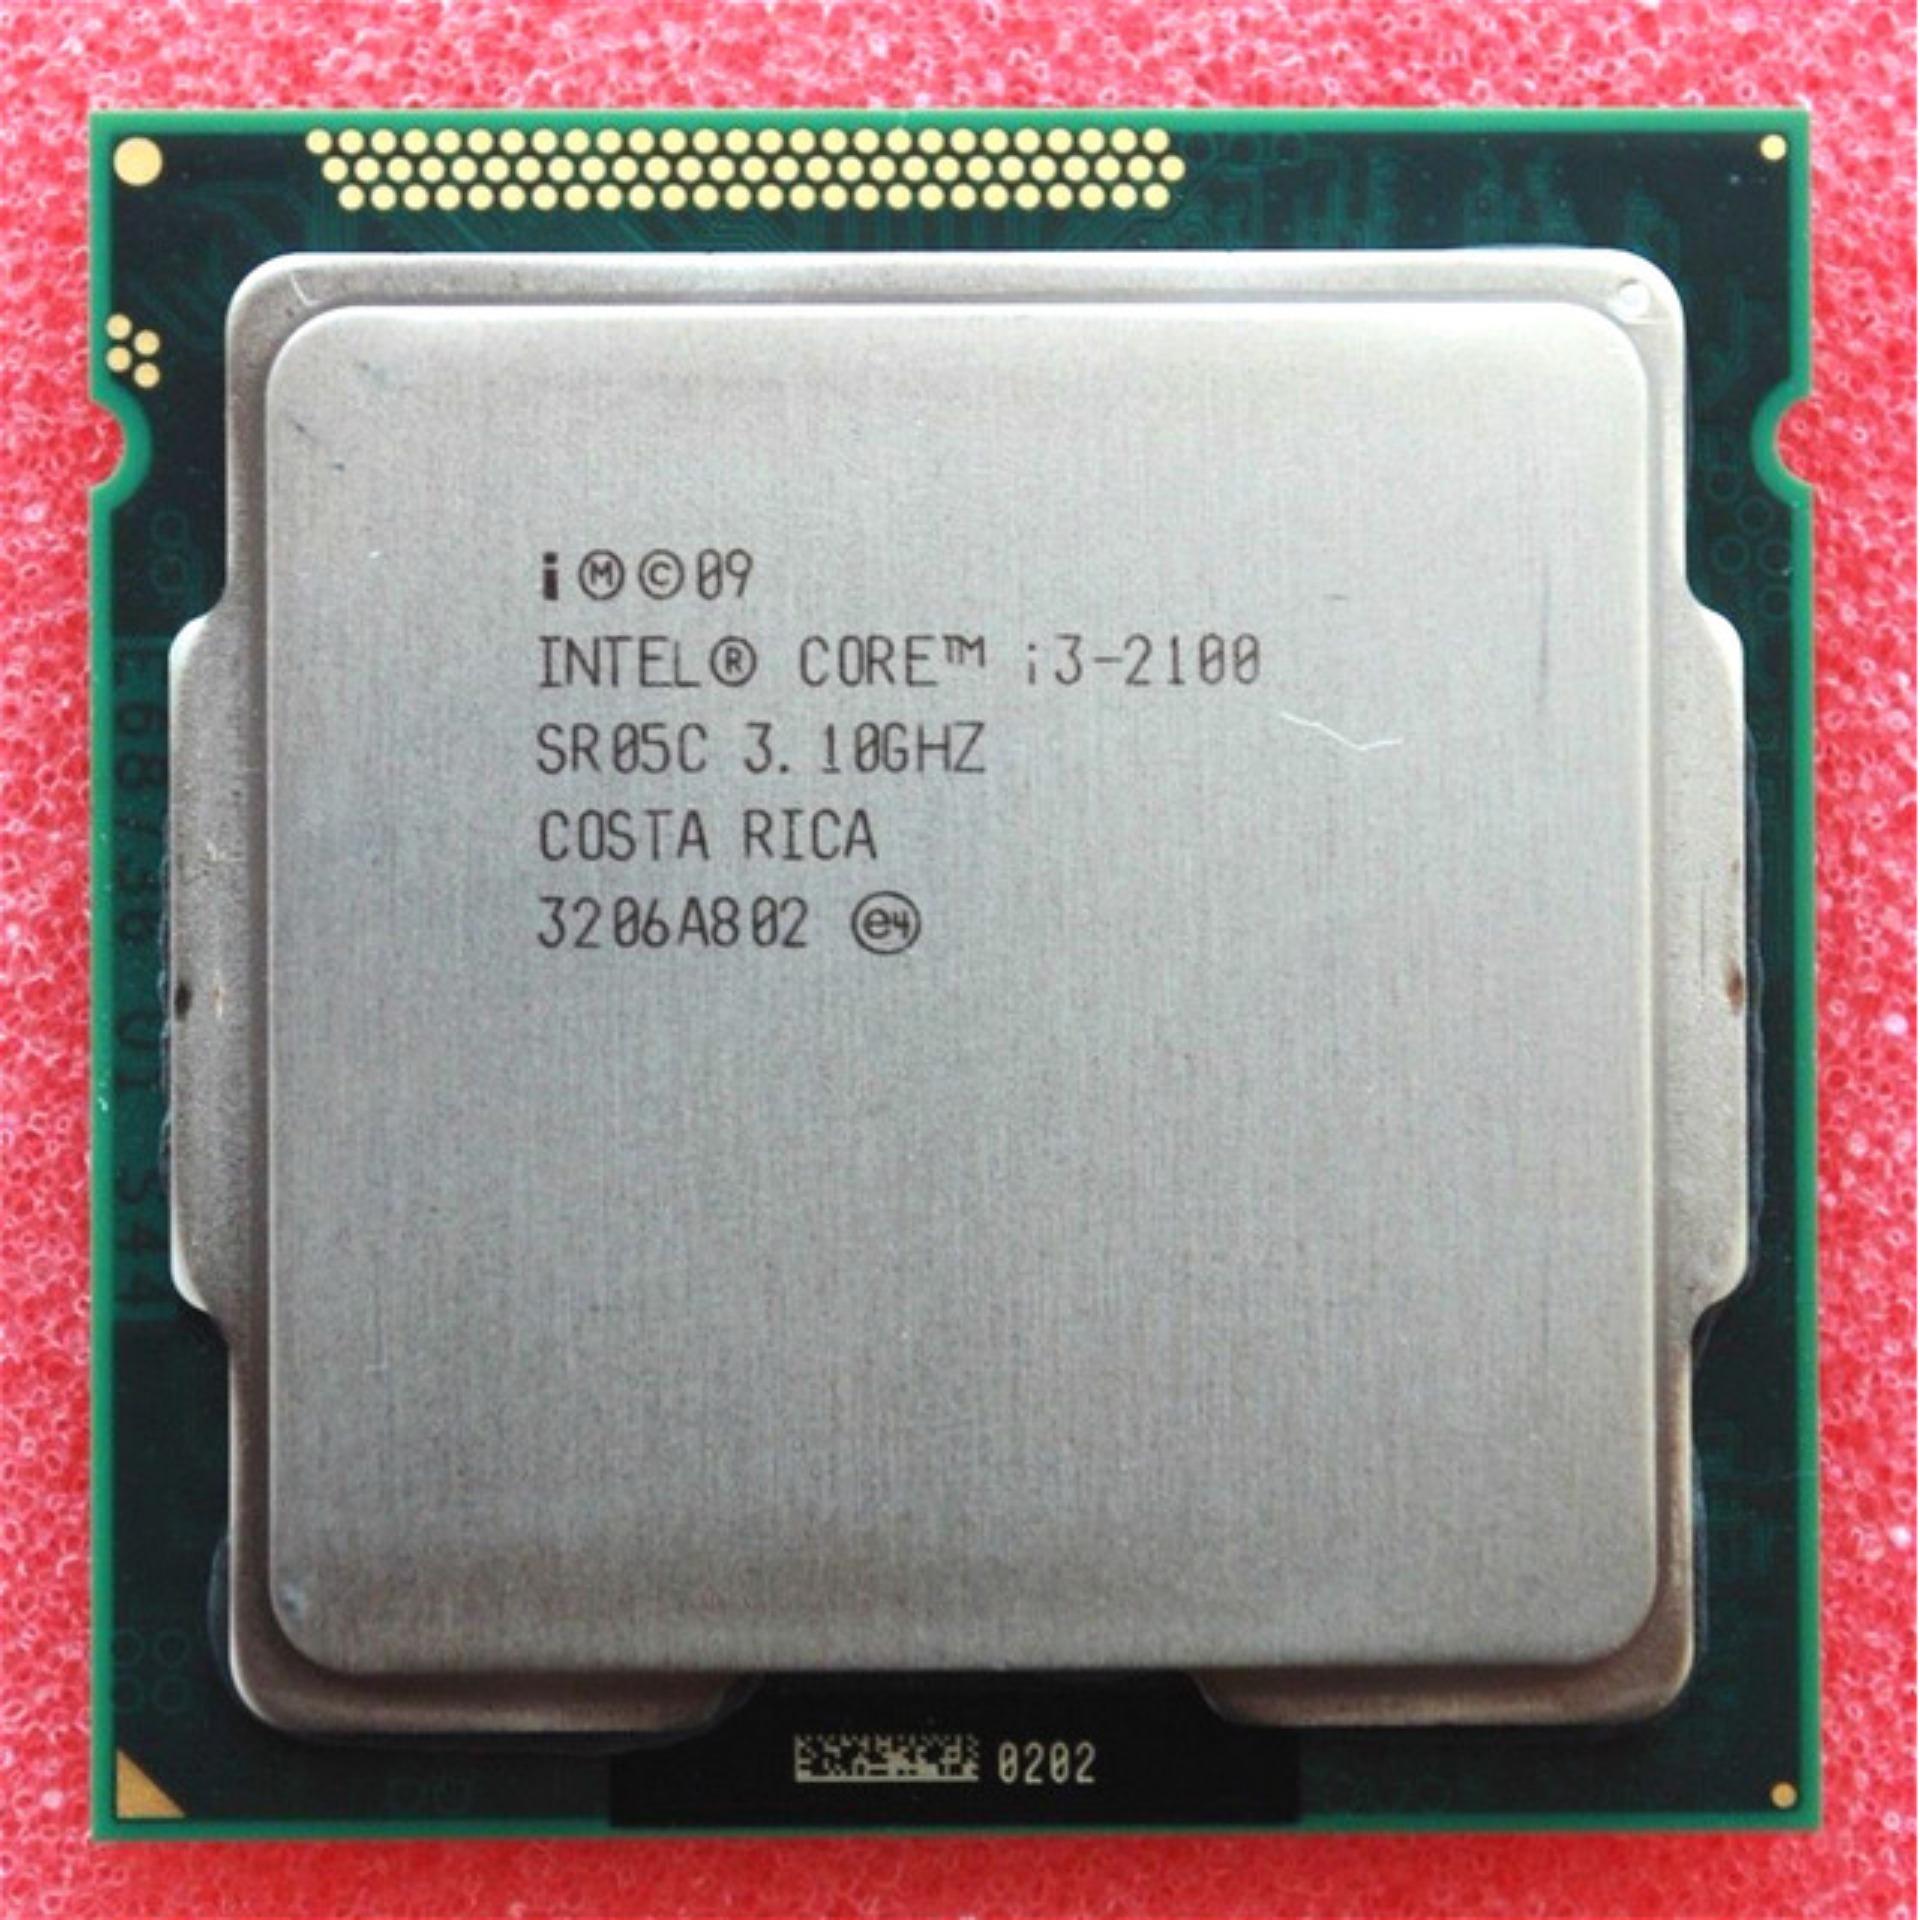 CPU INTEL CORE I3 2100 - 2120 3.30GHZ Socket 1155. Bảo hành 1 tháng. Tặng keo tản nhiệt